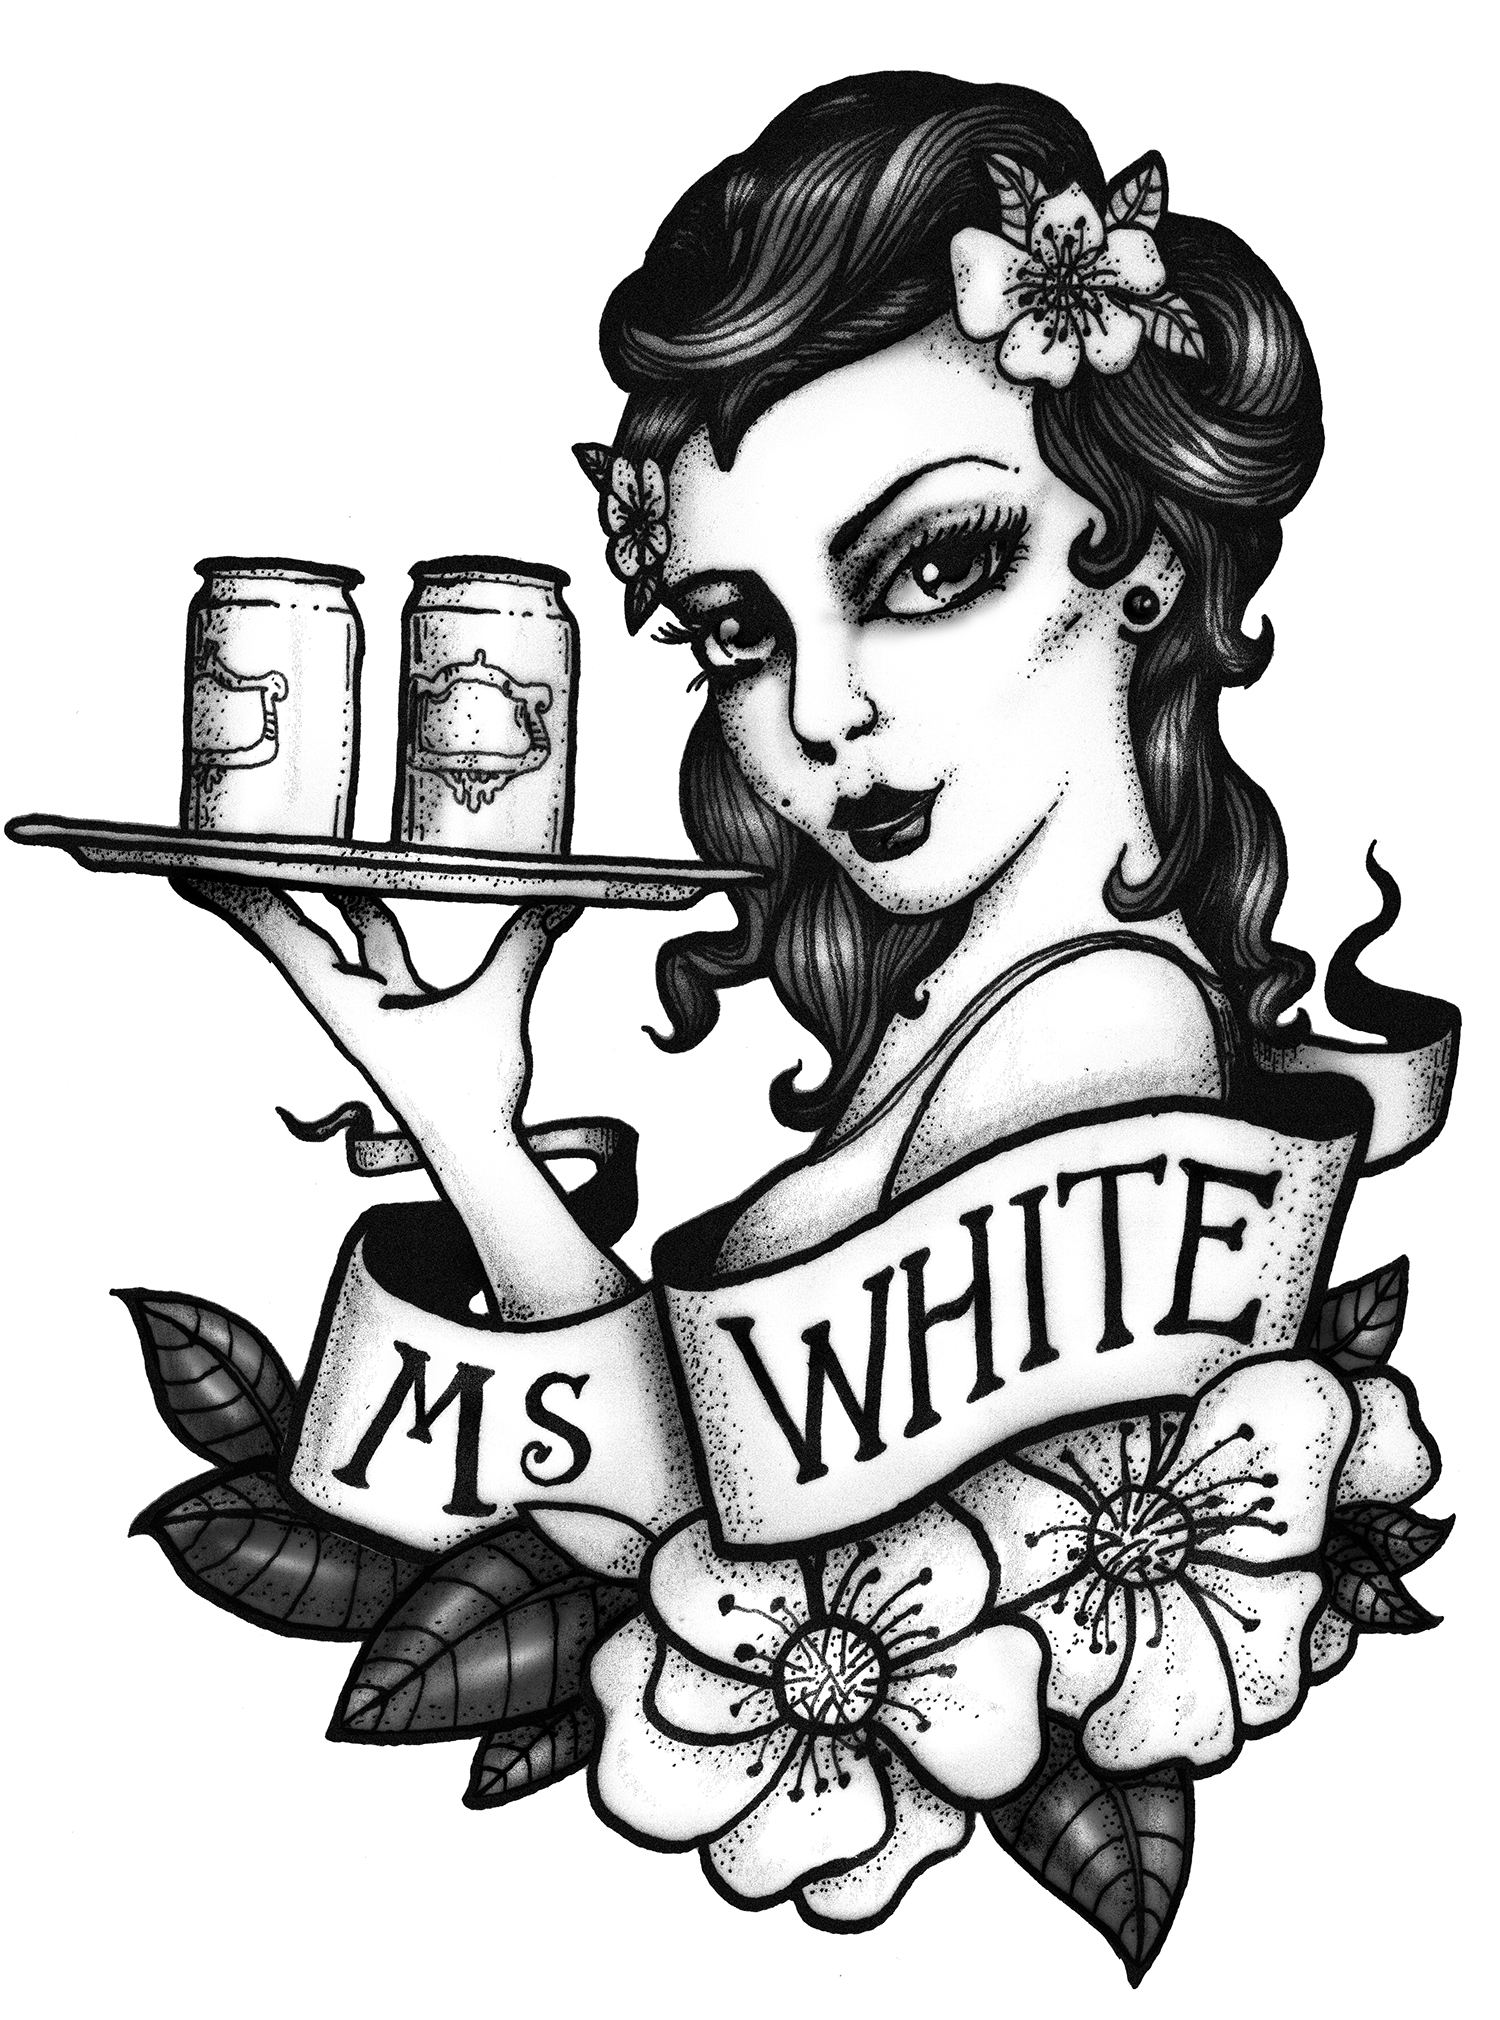 Ms White